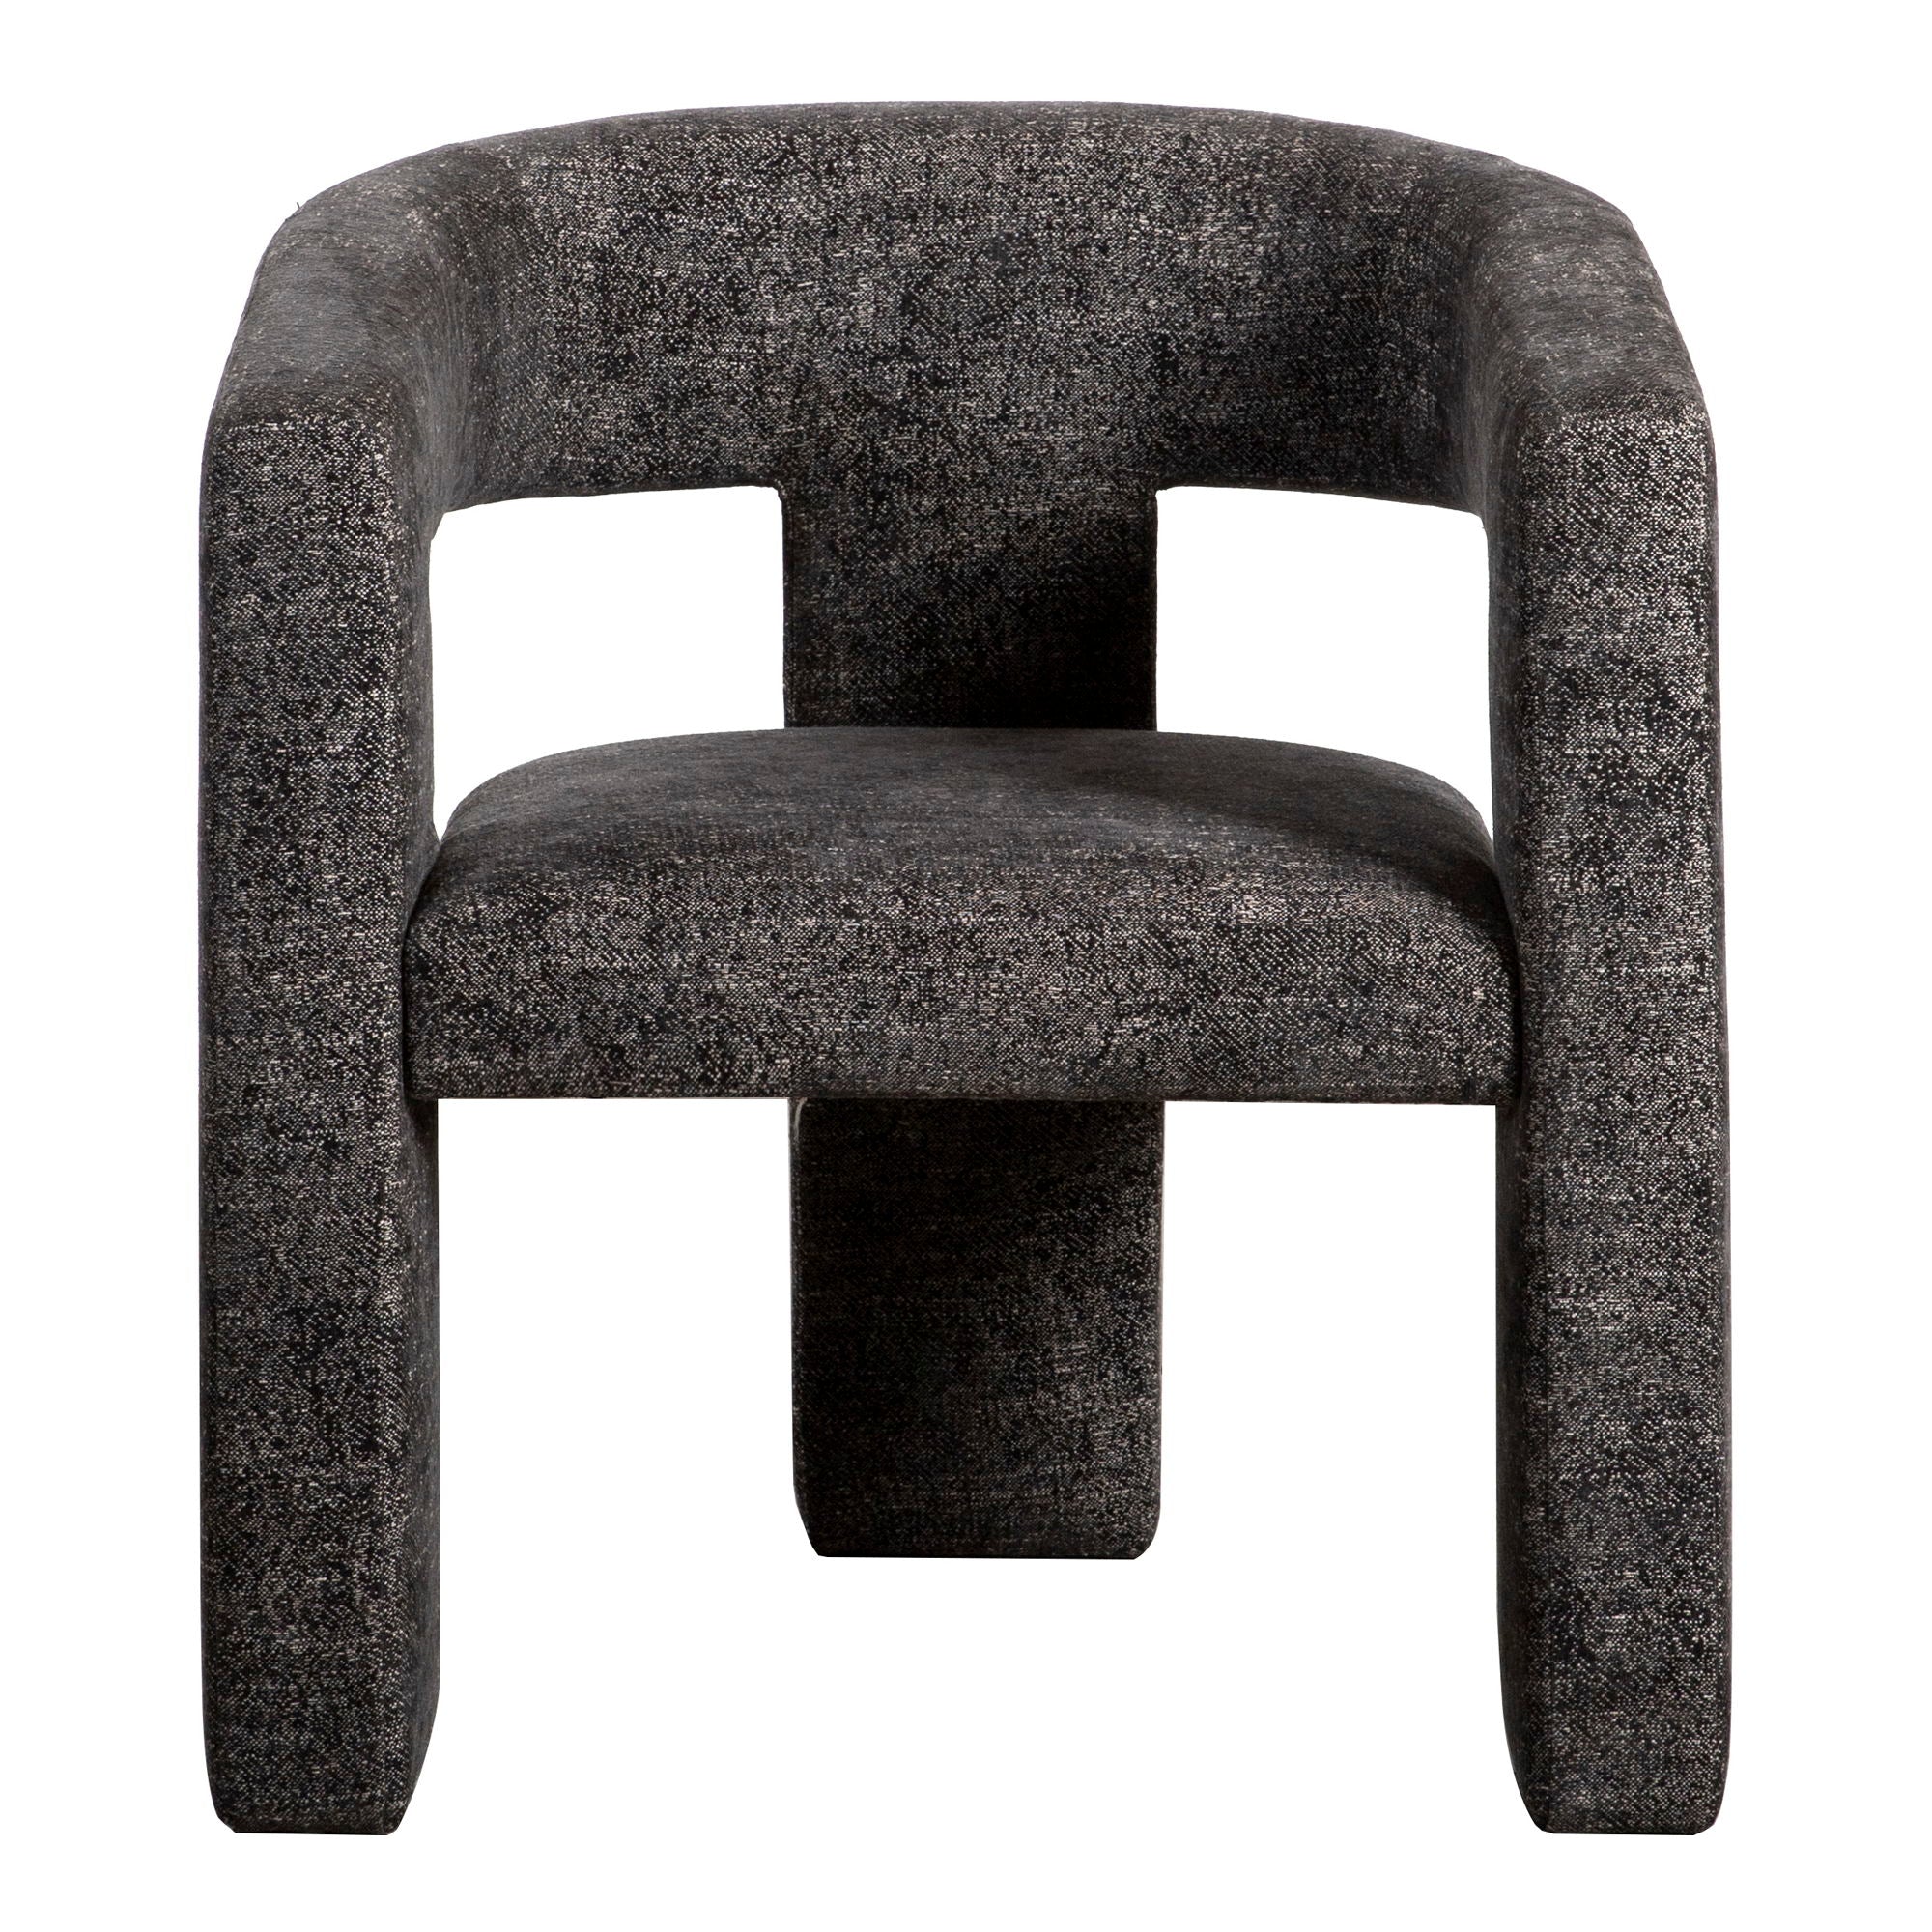 Elo - Chair - Black